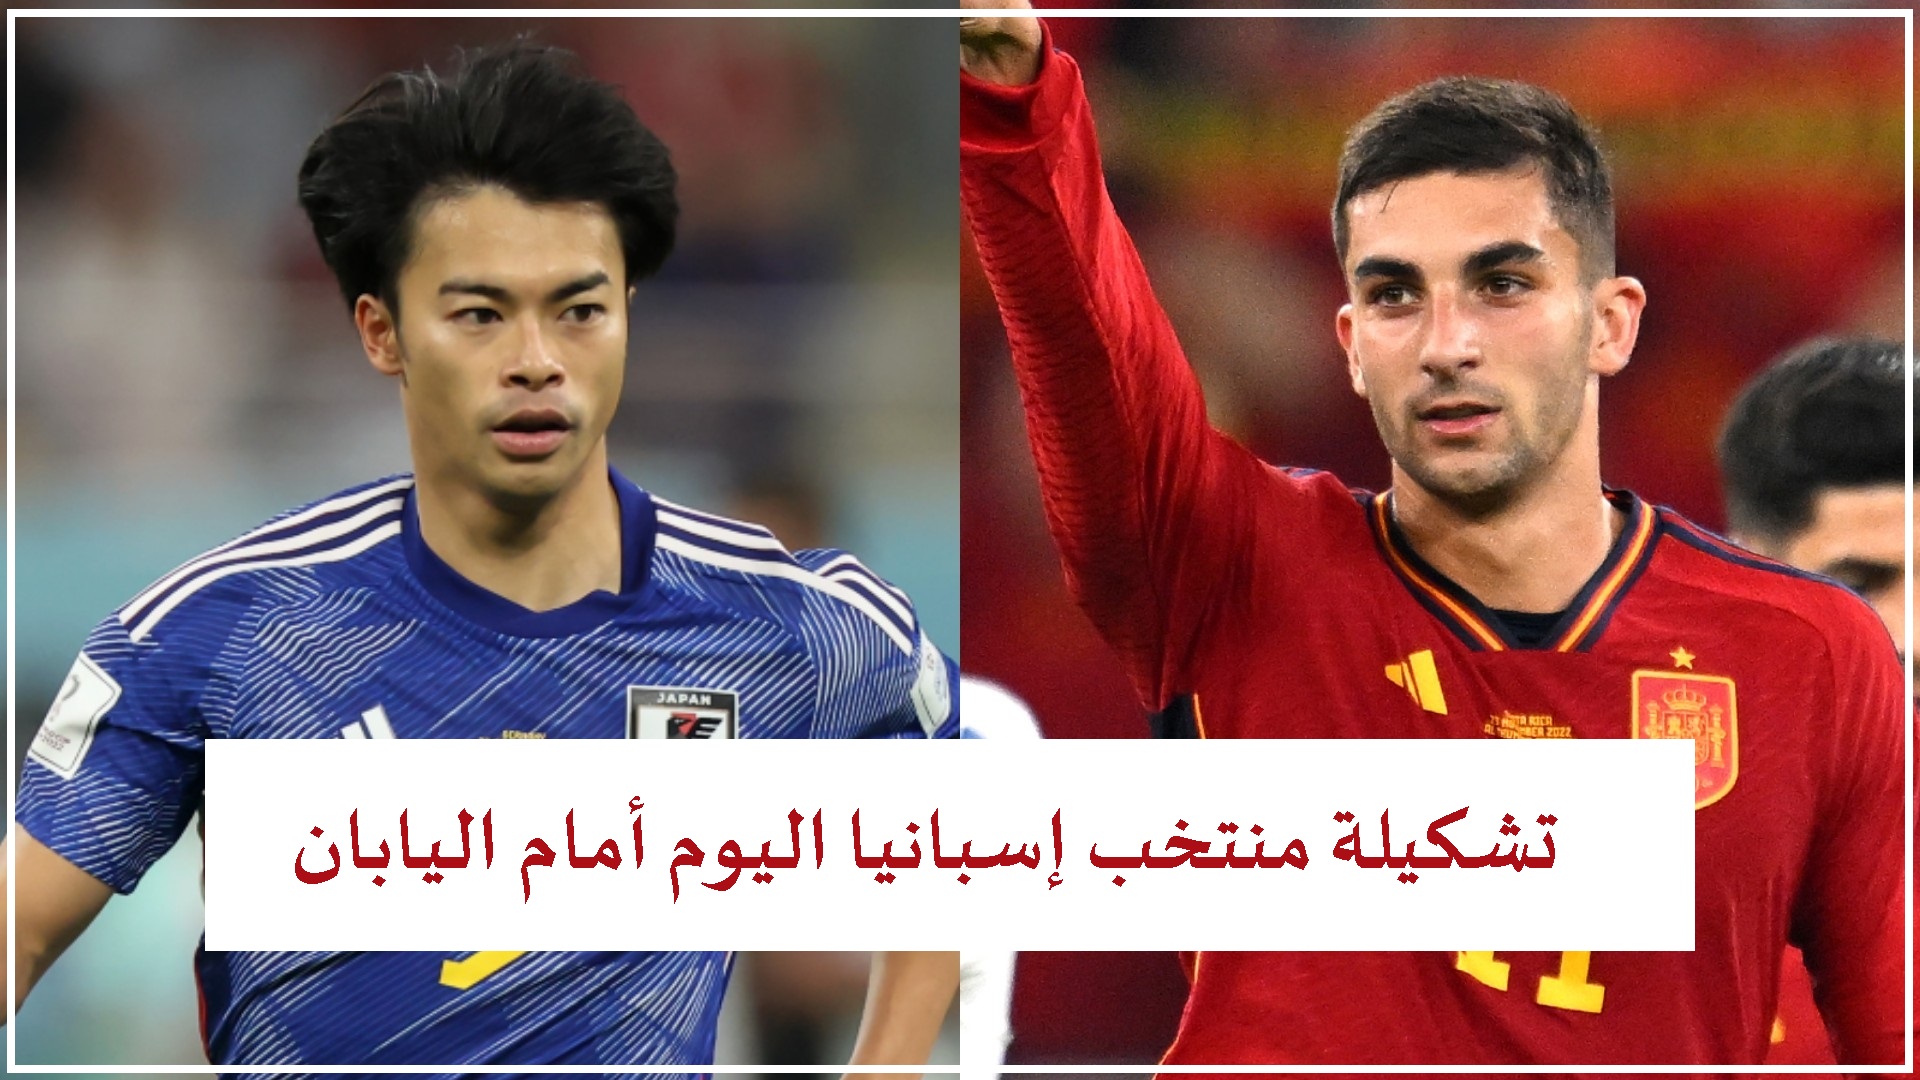 تشكيلة منتخب إسبانيا اليوم أمام اليابان في كأس العالم قطر 2022 التشكيل الأساسي